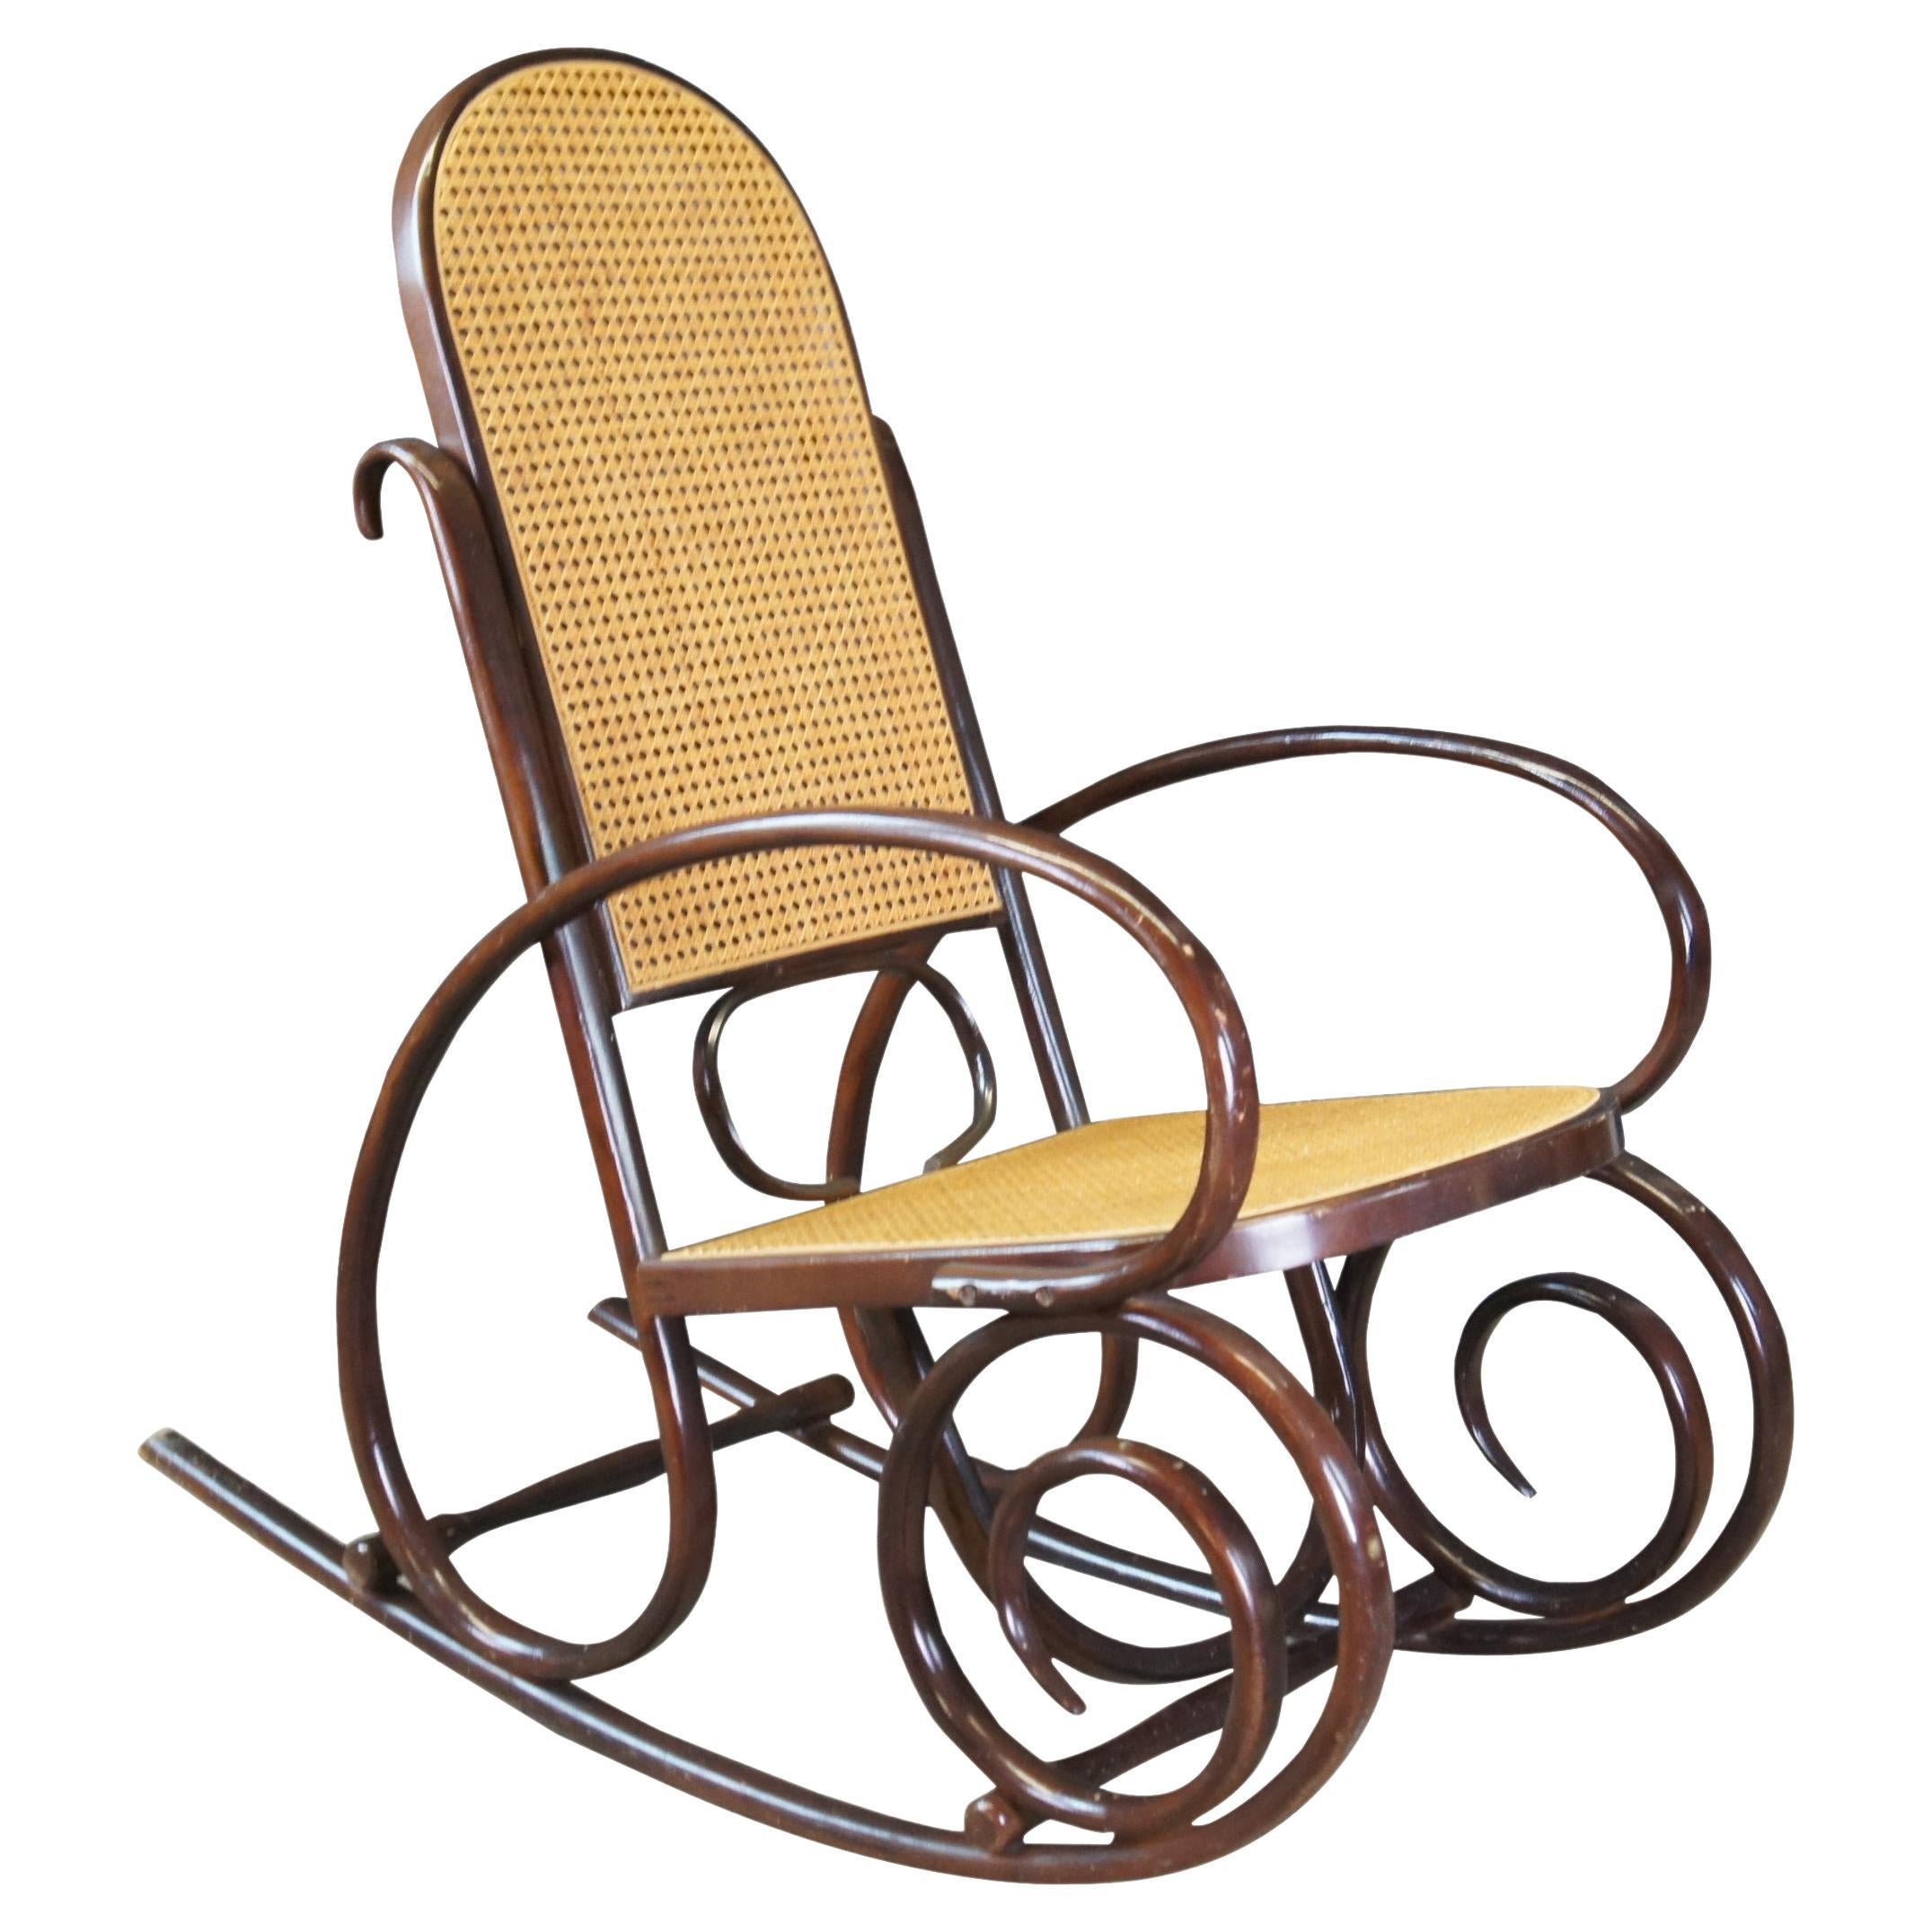 Chaise à bascule emblématique en bois cintré de style Thonet avec dossier en rotin naturel et assise en rotin